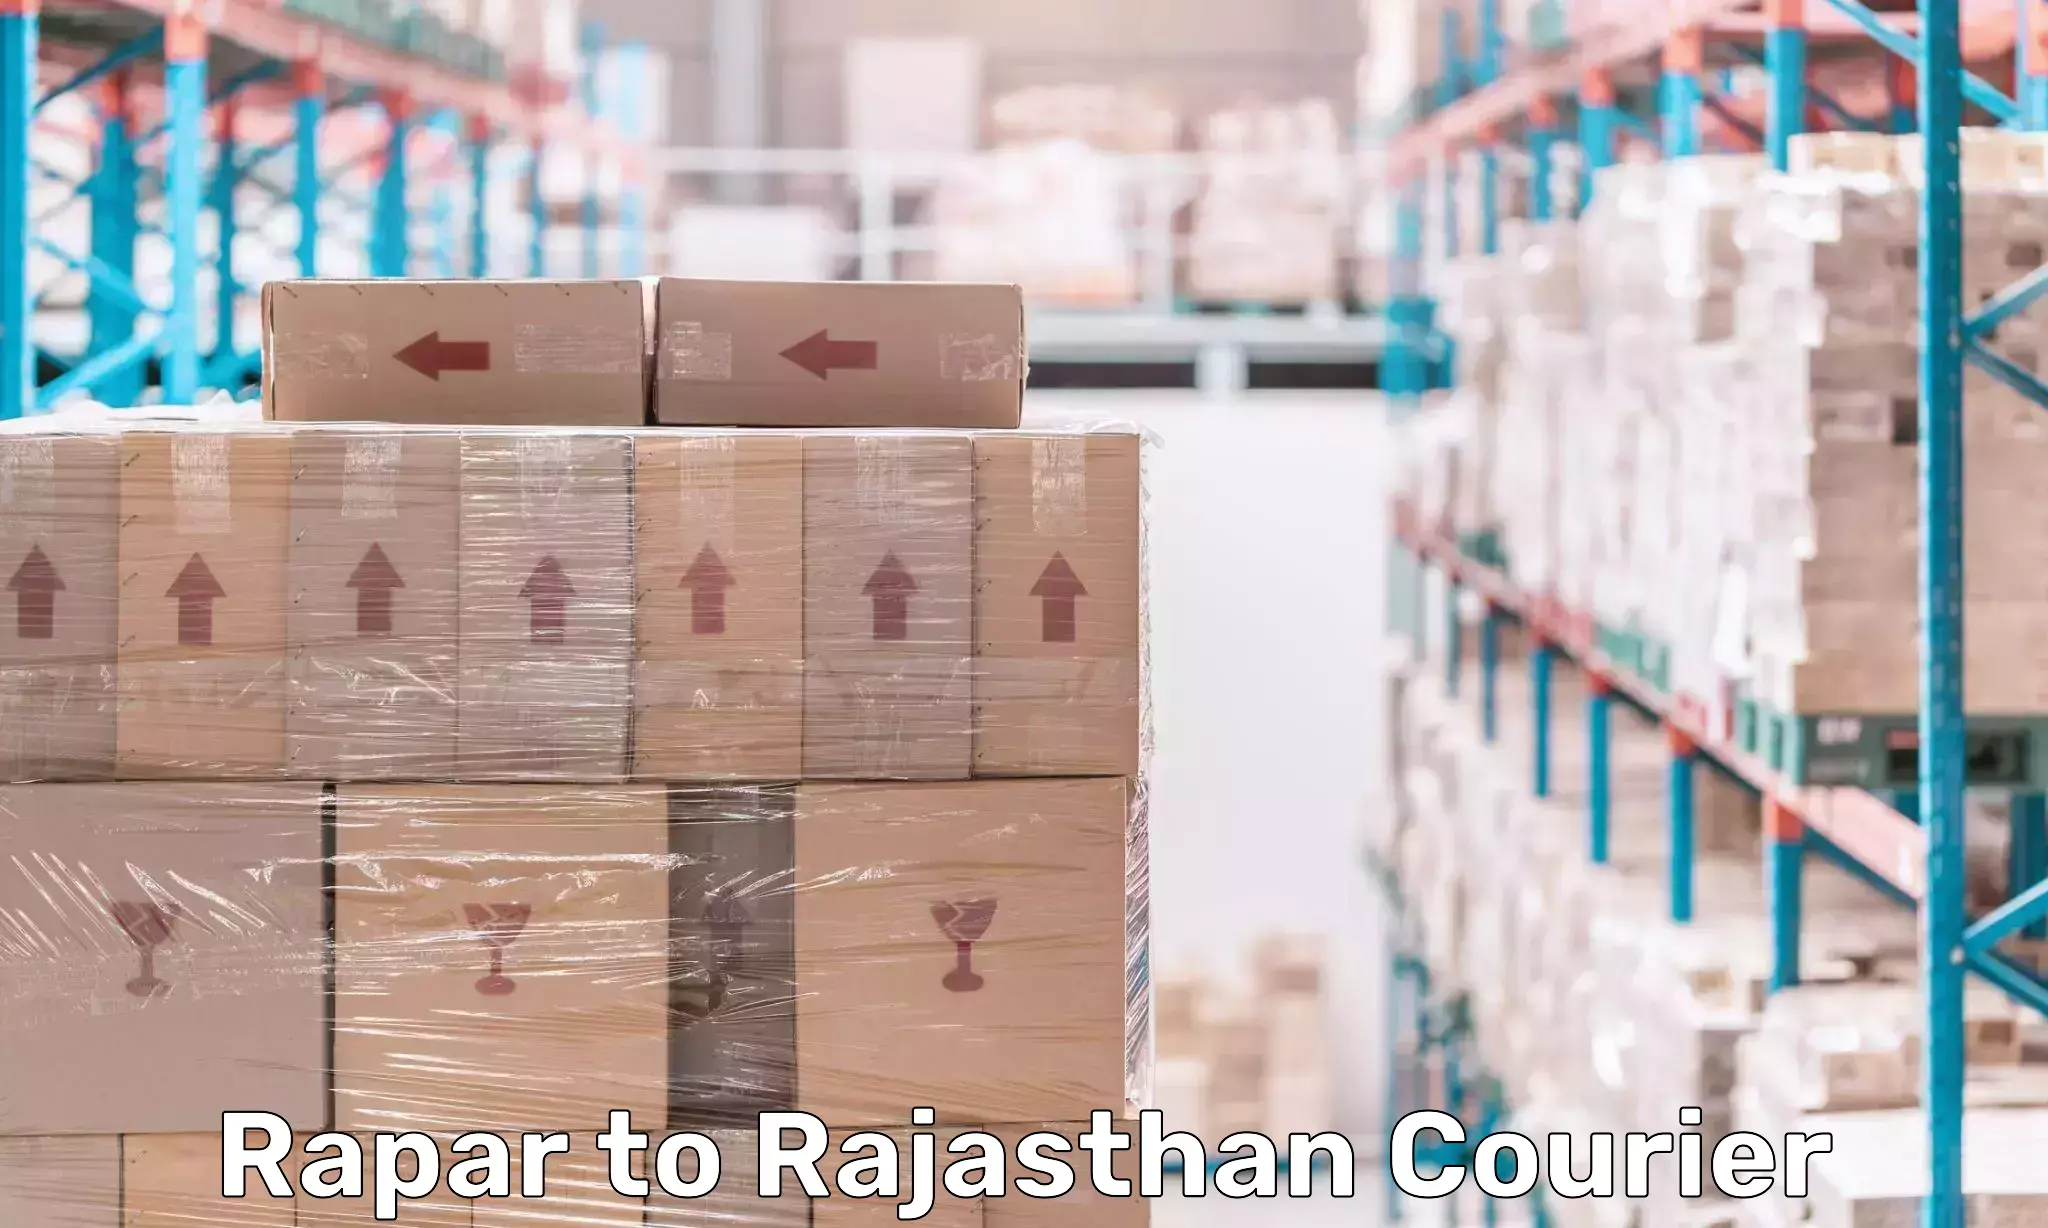 Doorstep parcel pickup in Rapar to Rajasthan